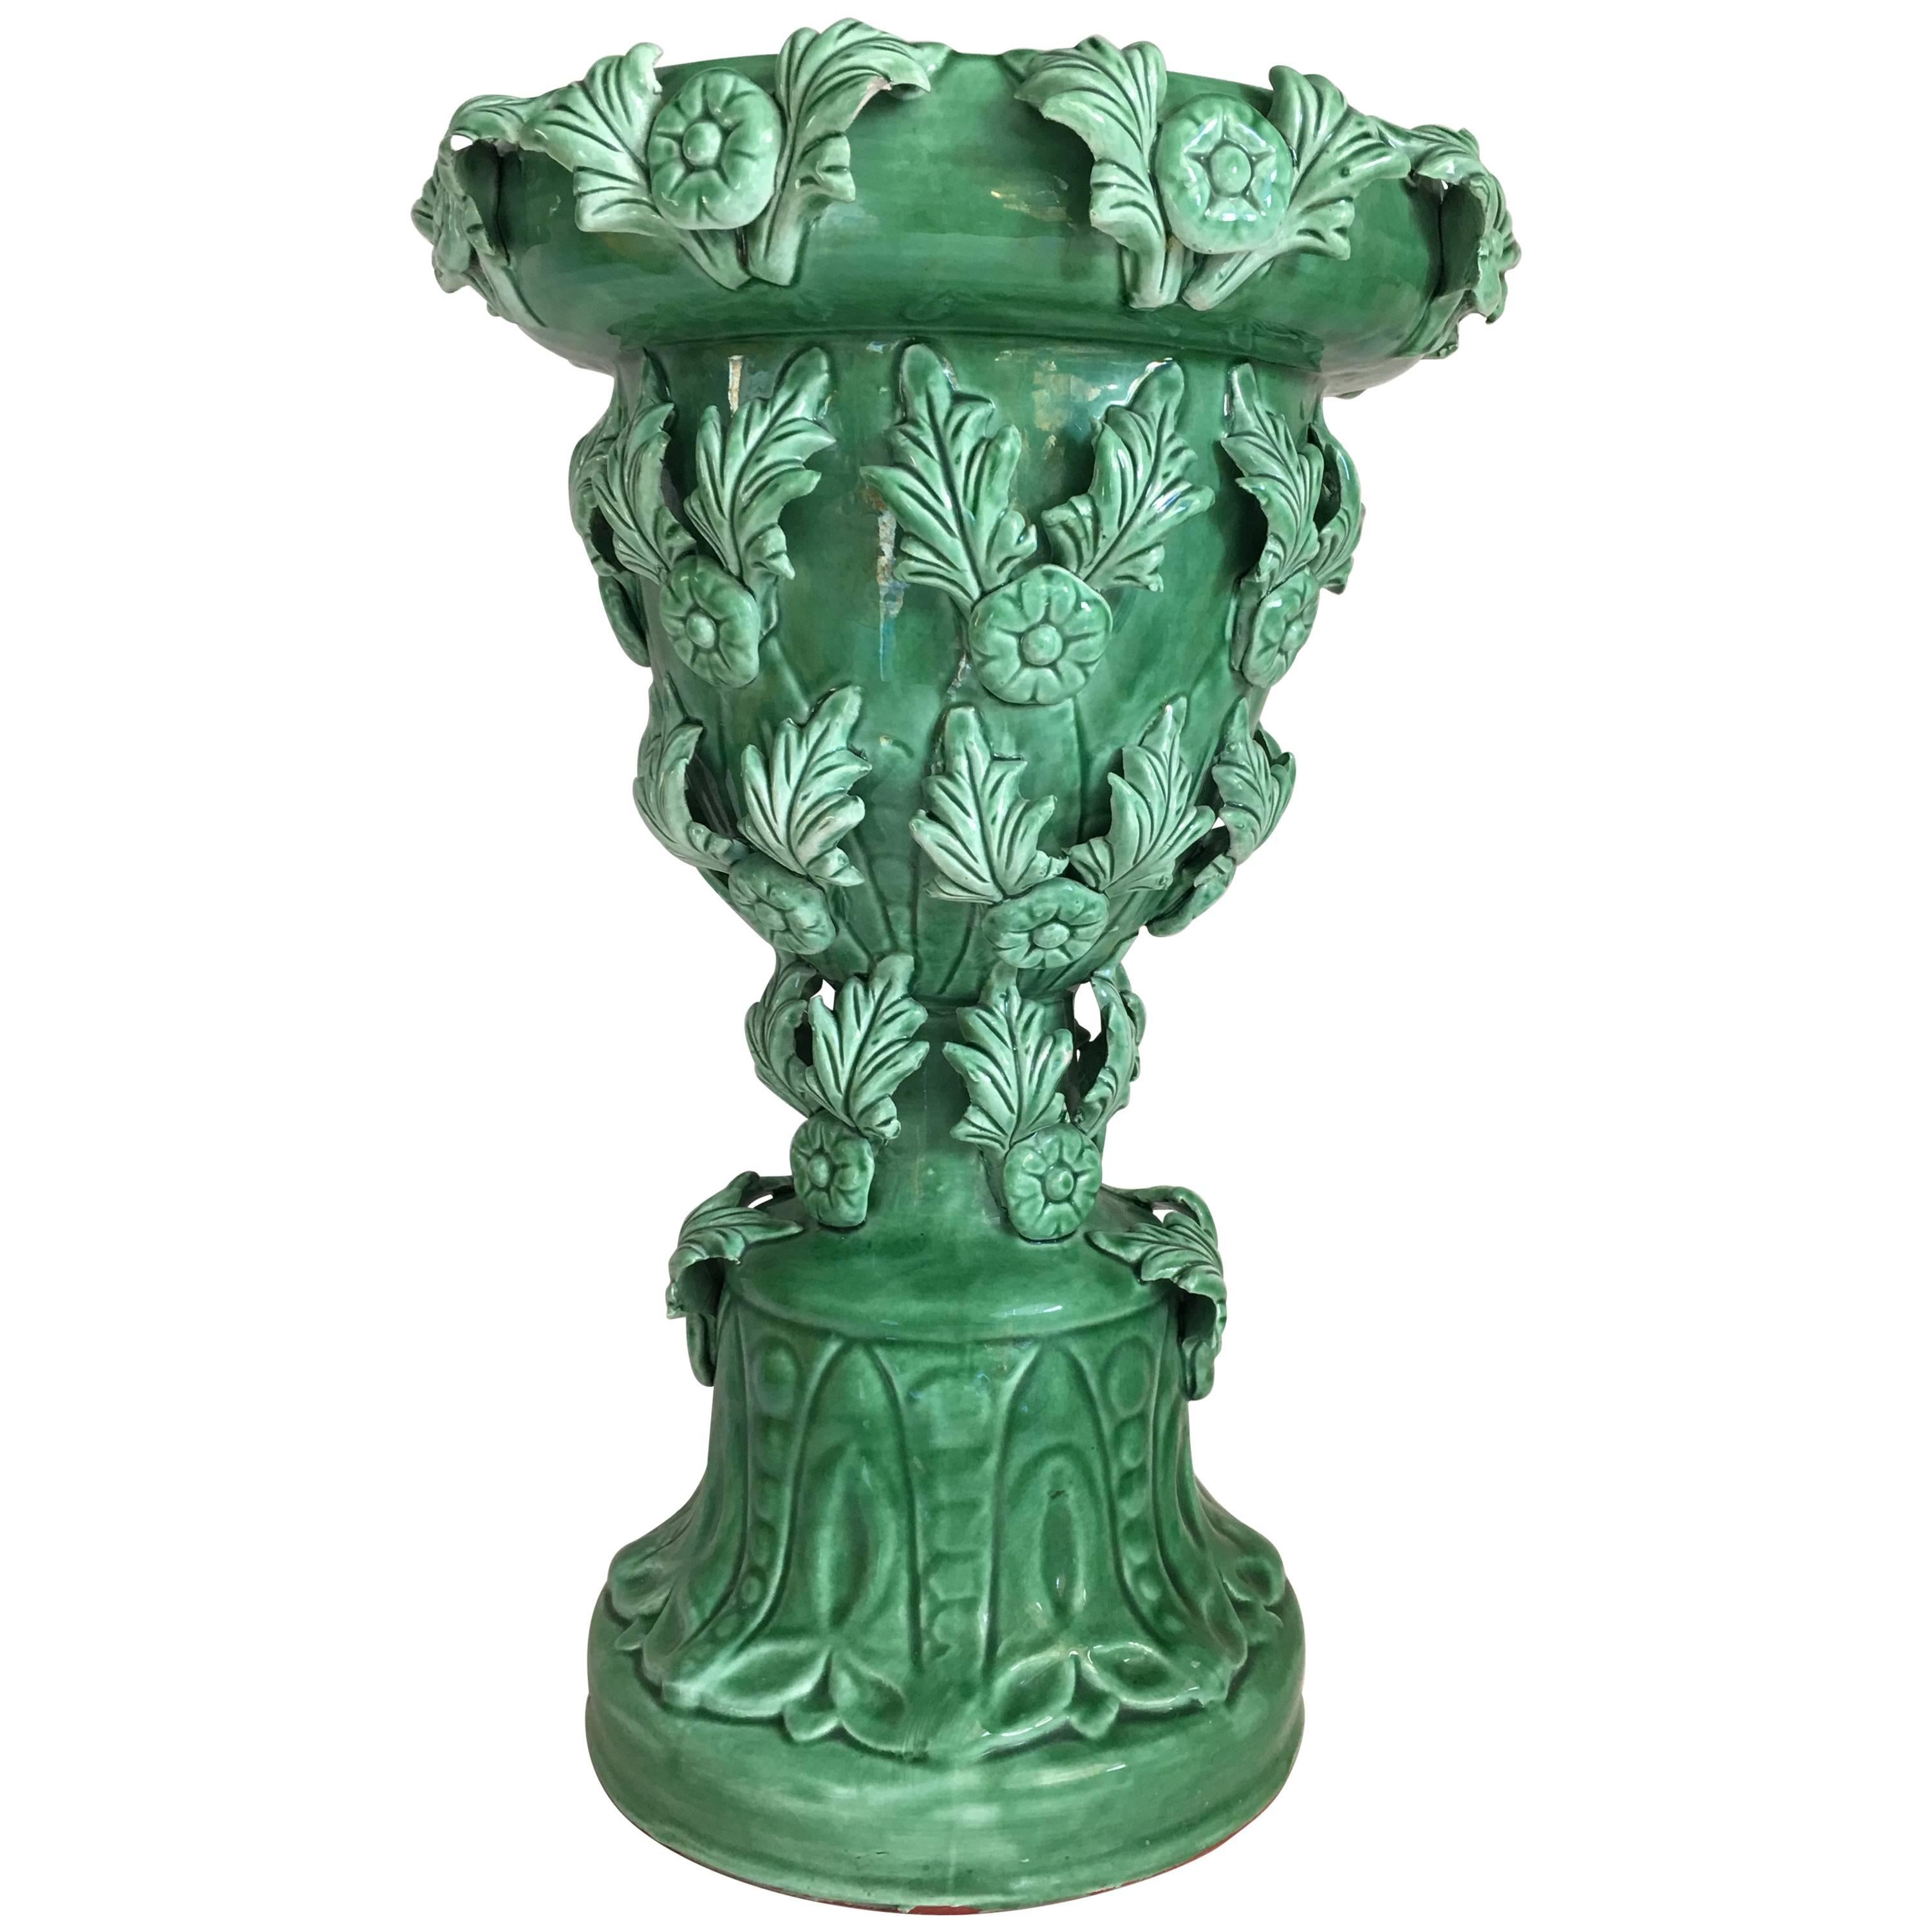 Französische Art nouveau-Stil-Keramik-Pflanzgefäß oder Vase um 1910